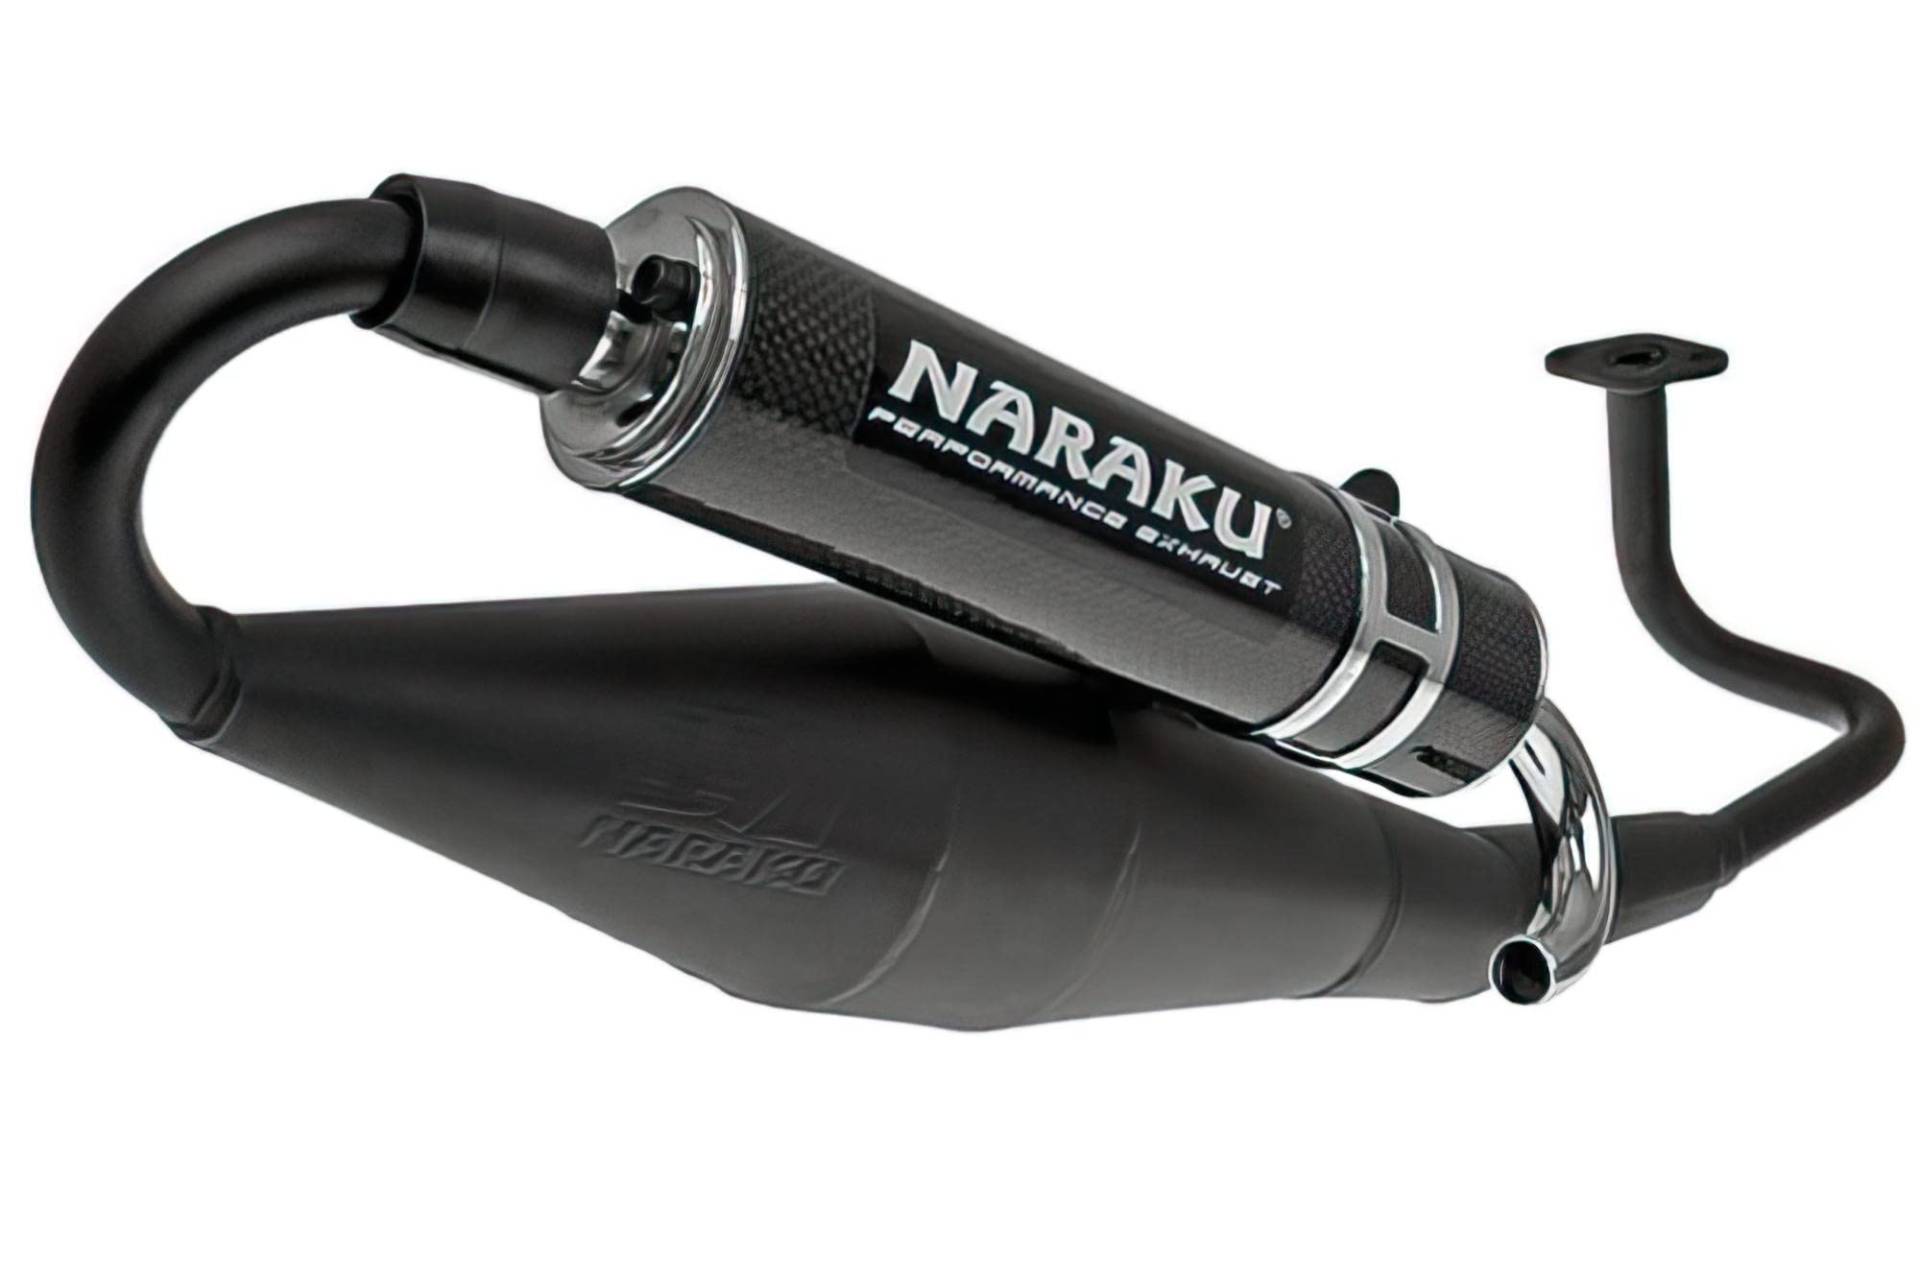 Auspuff Naraku Crossover Schwarz Carbon für GY6 139QMB/QMA von NARAKU